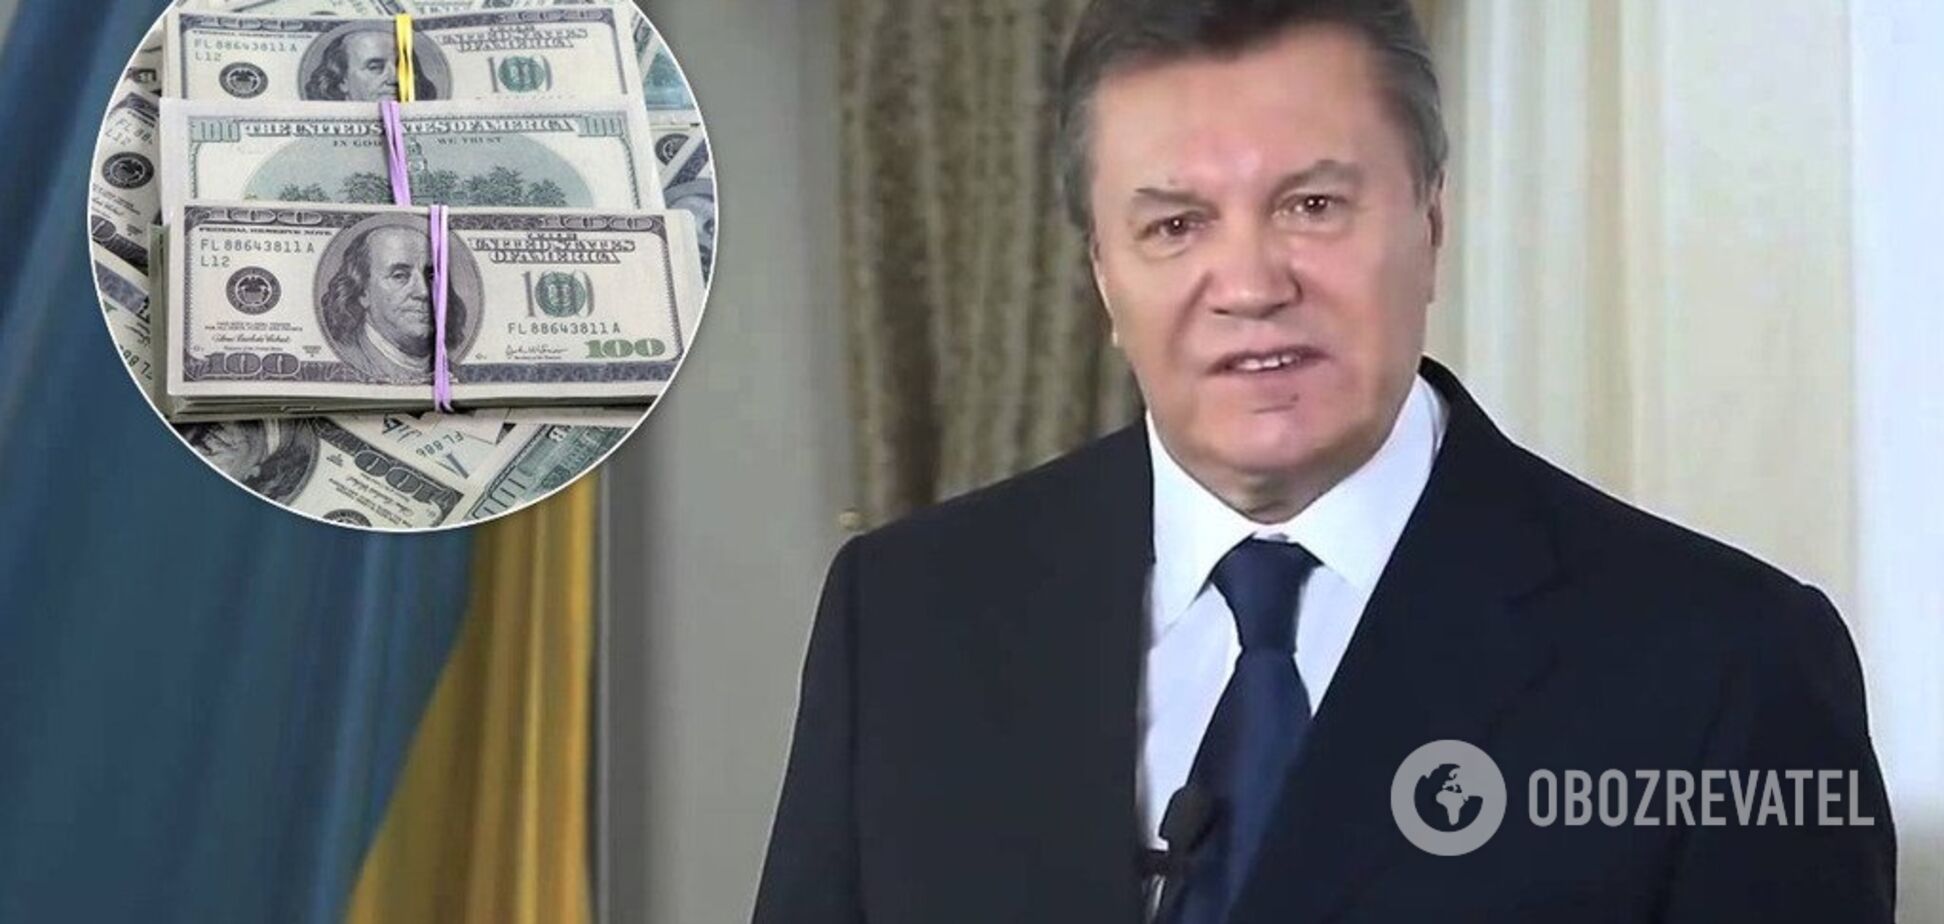 Гроші МВФ йдуть у 'общак Януковича': прокуратура забила на сполох